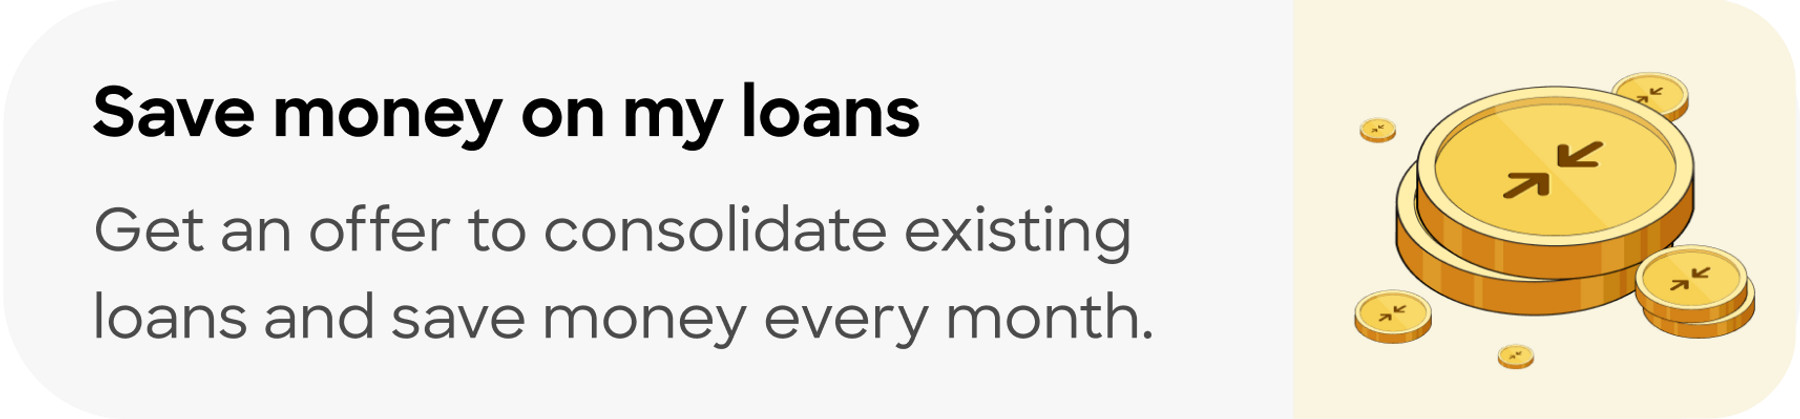 consolidate loans en